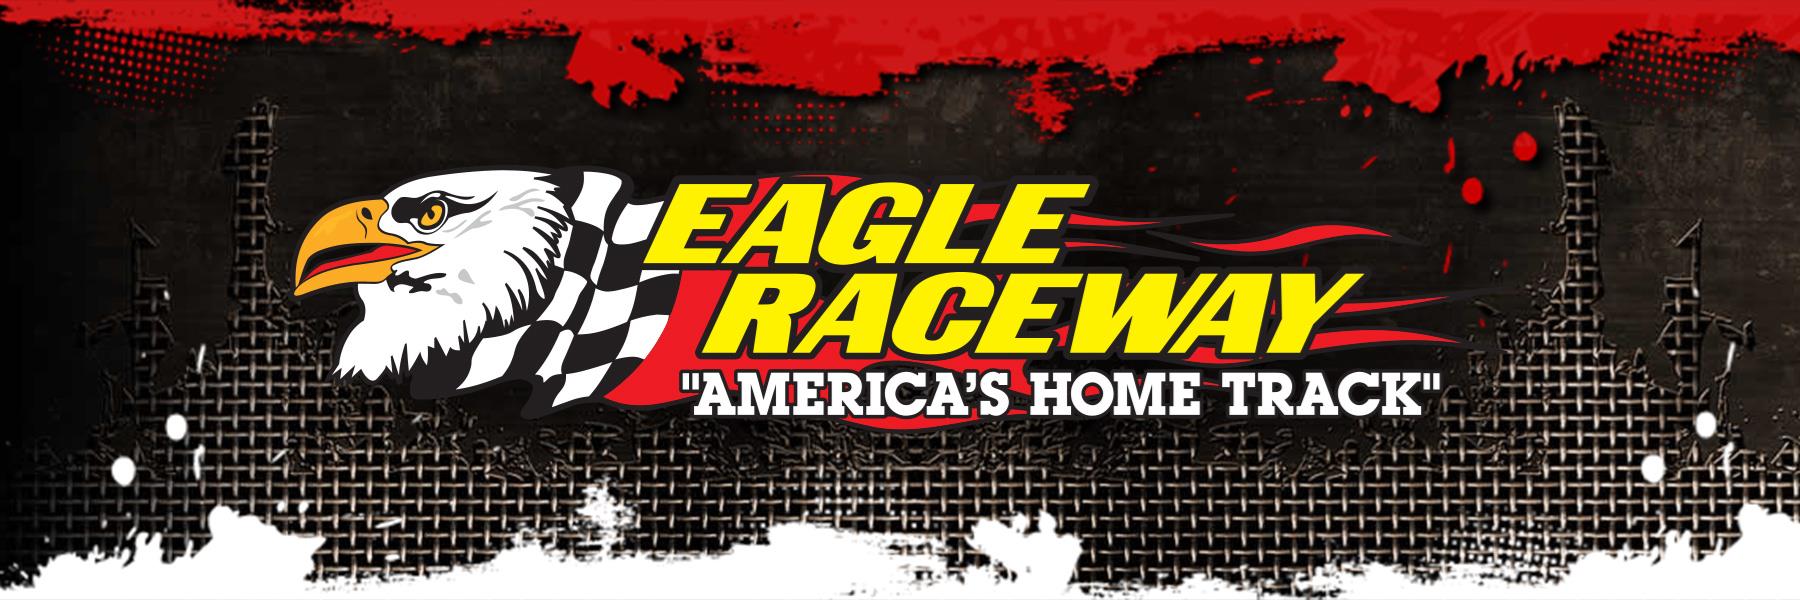 8/3/2013 - Eagle Raceway